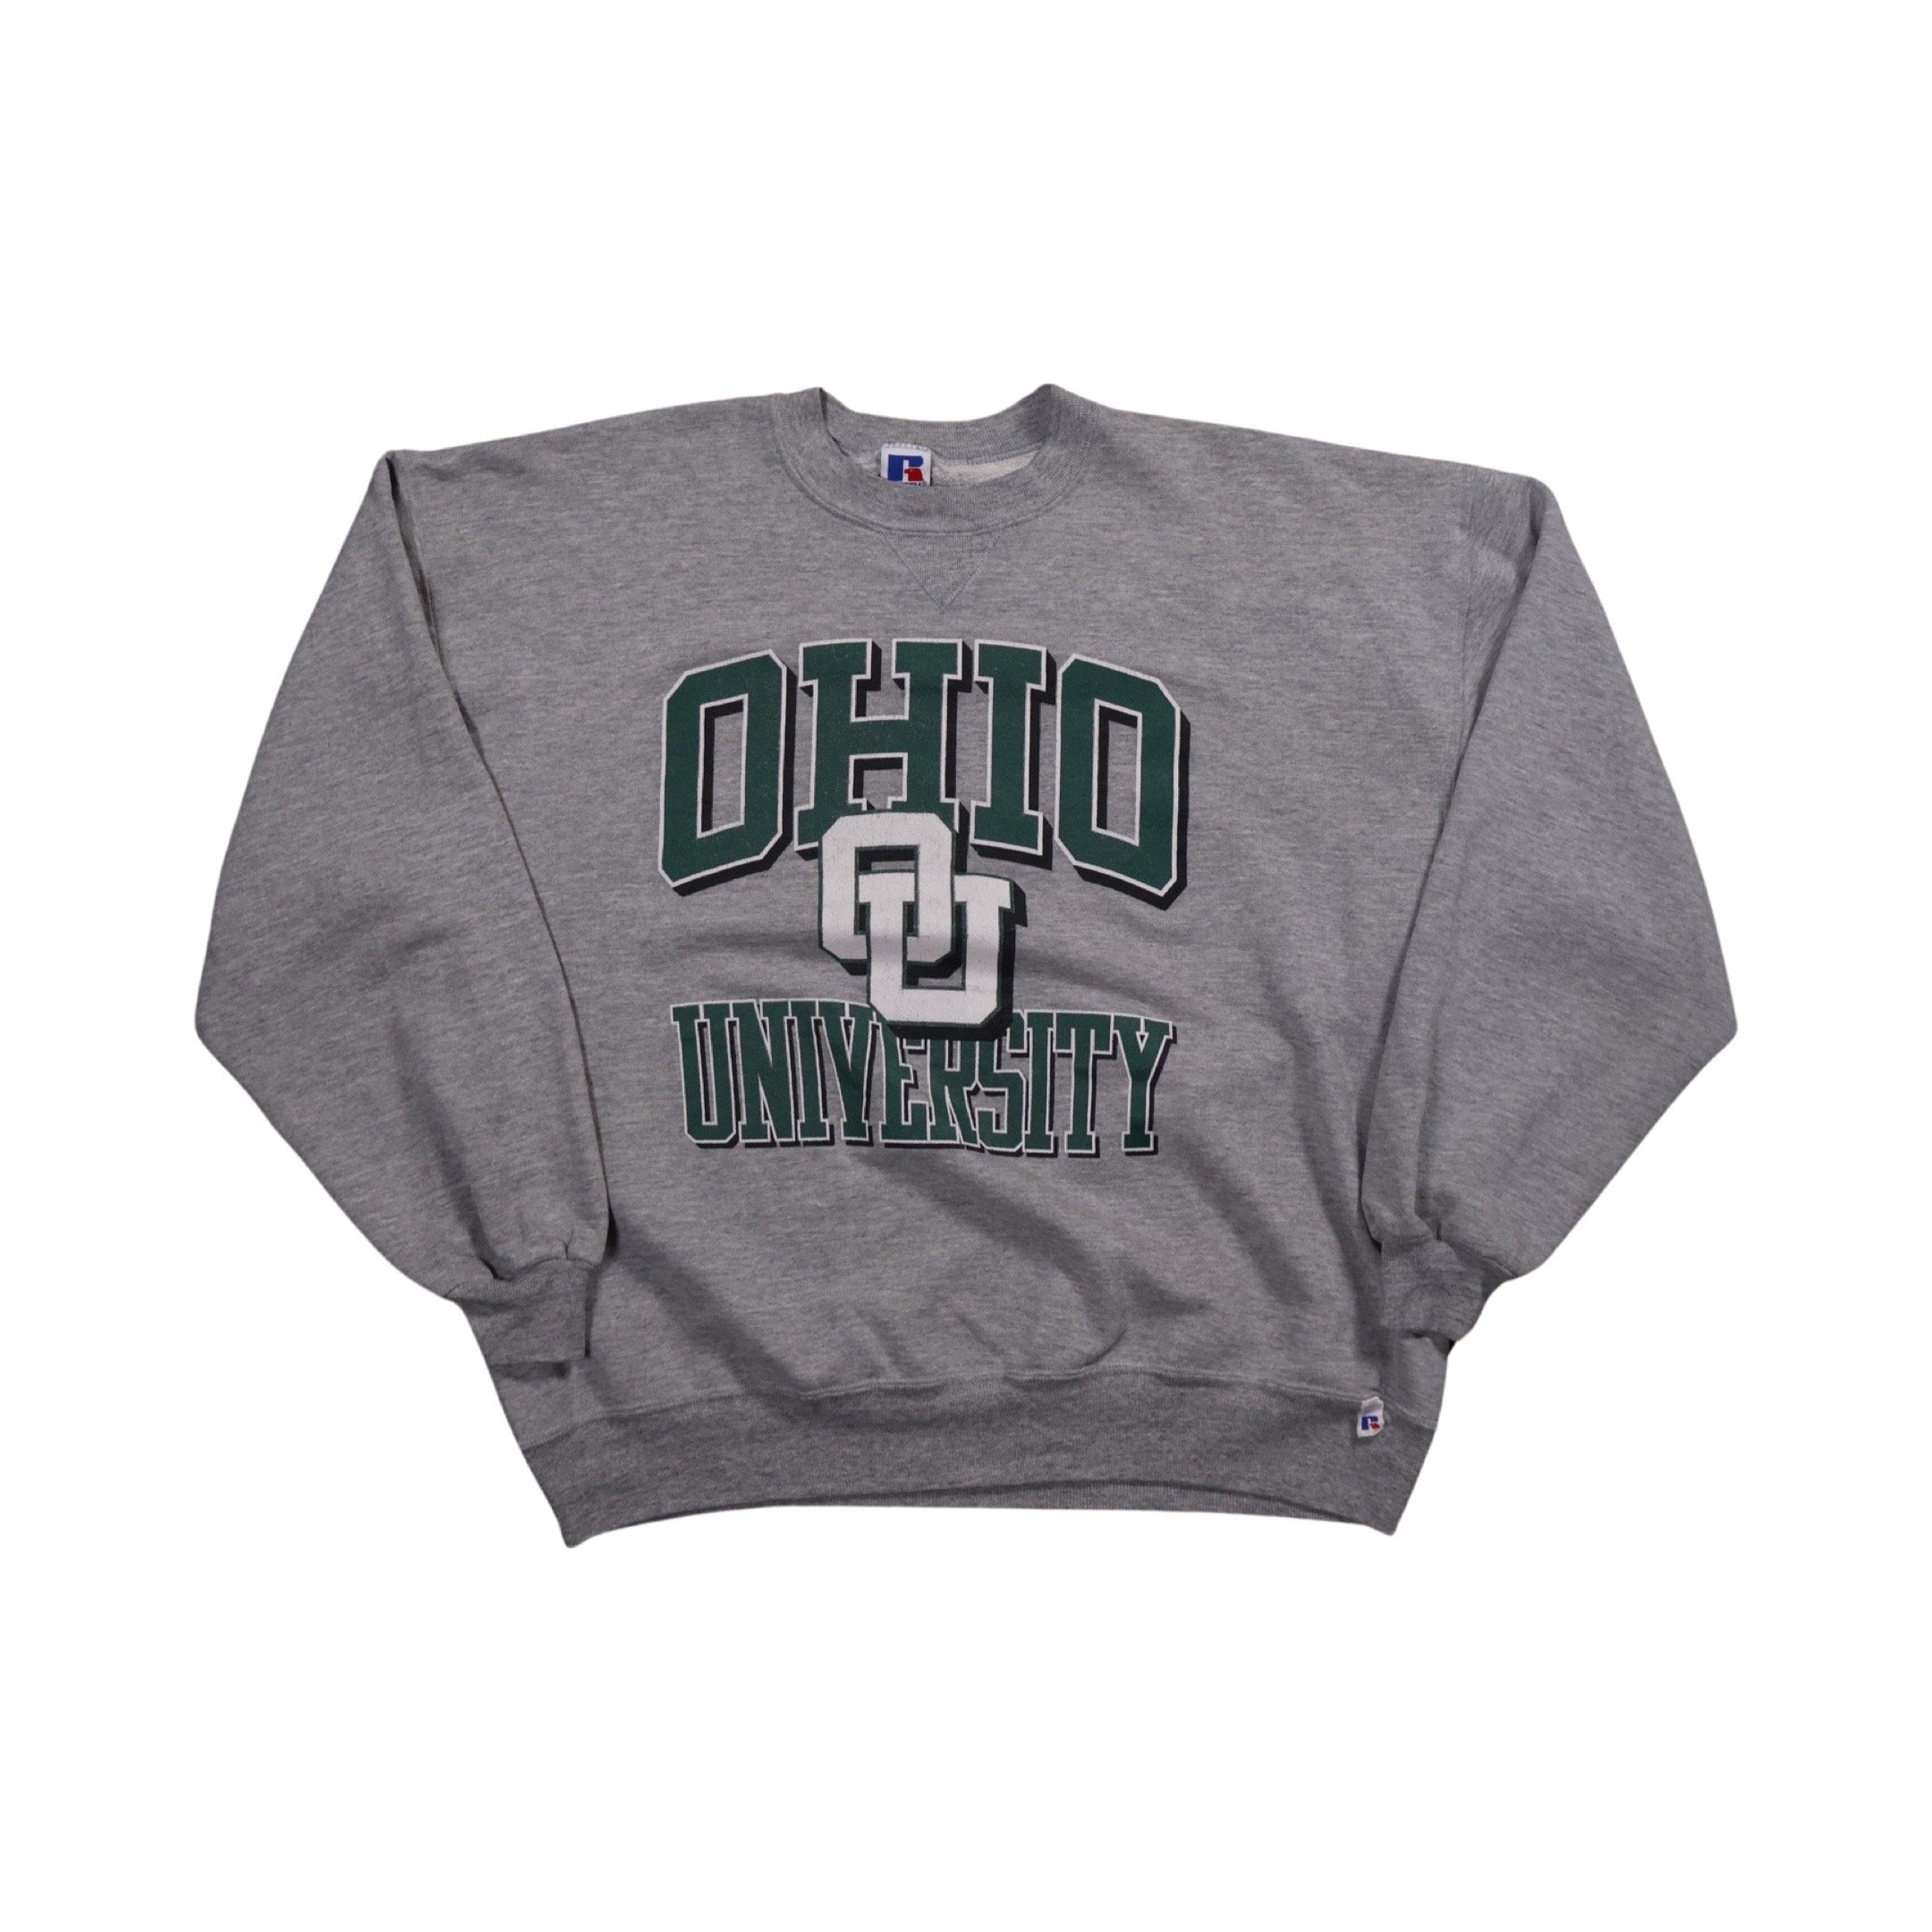 Ohio University 90s Sweater (Large)